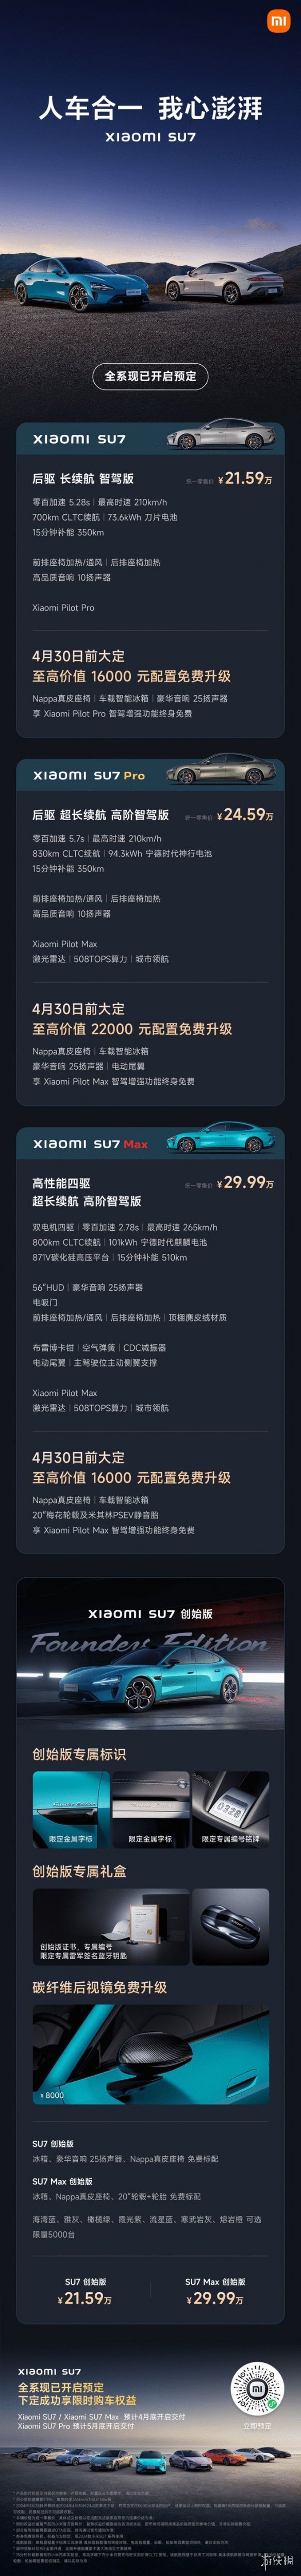 小米纯电动轿车SU7正式公布 标准版售价21.59万元！